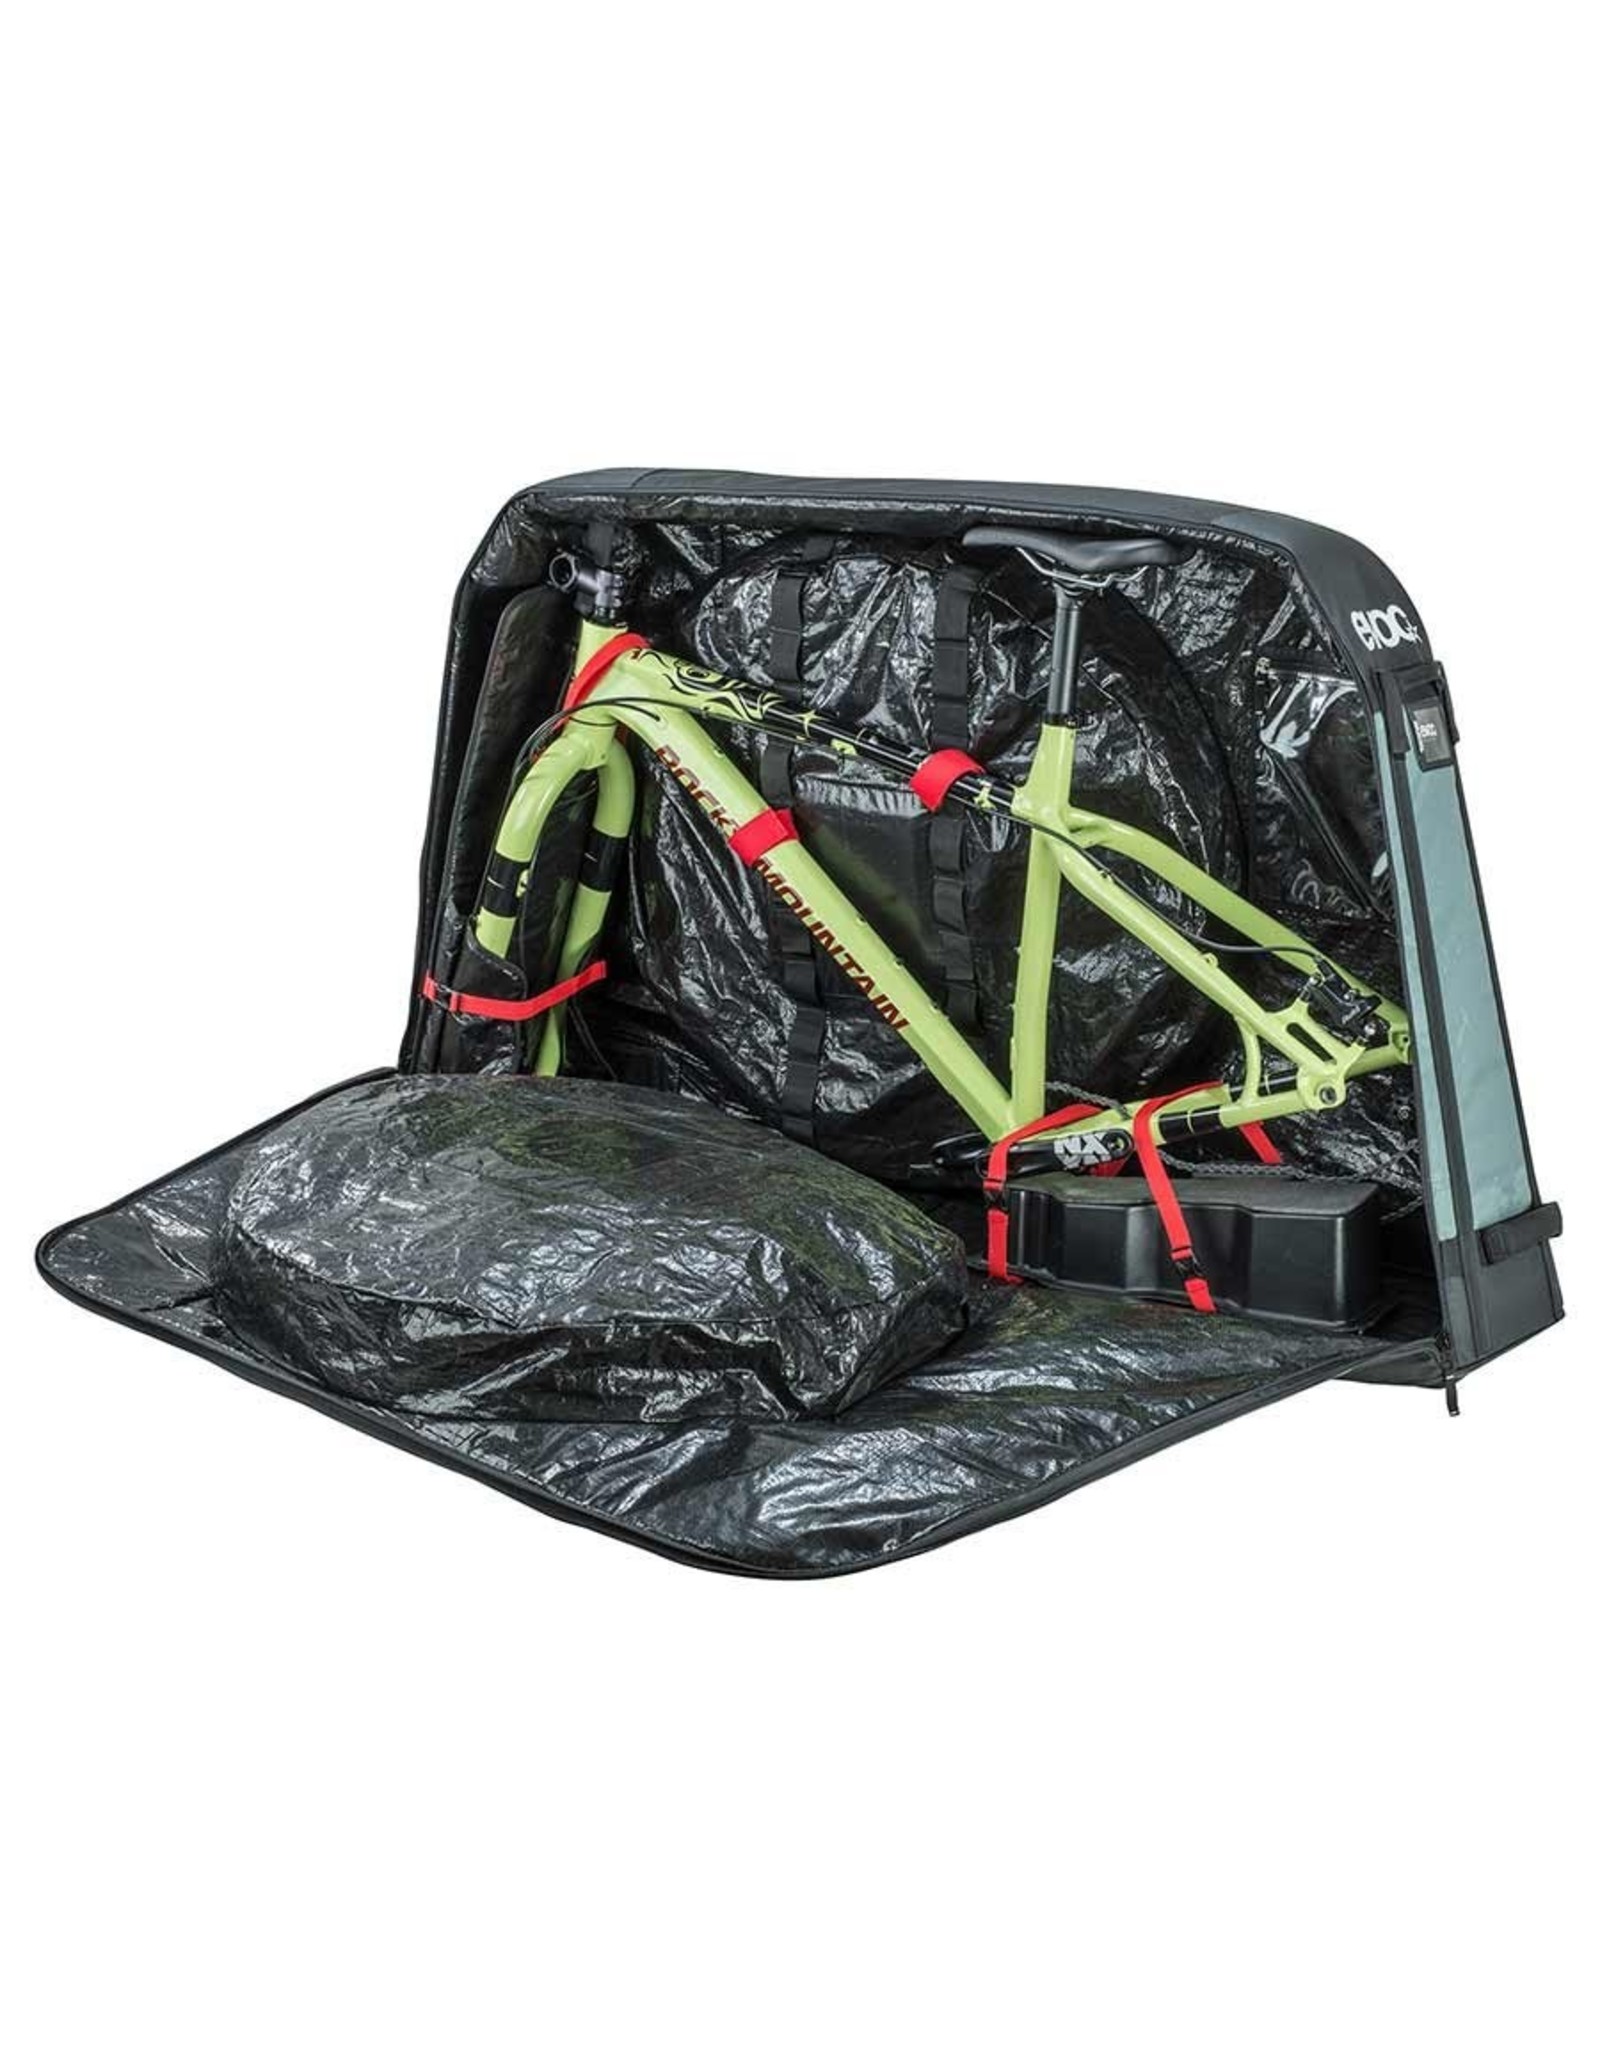 EVOC EVOC Bike Travel Bag - Olive -  XL